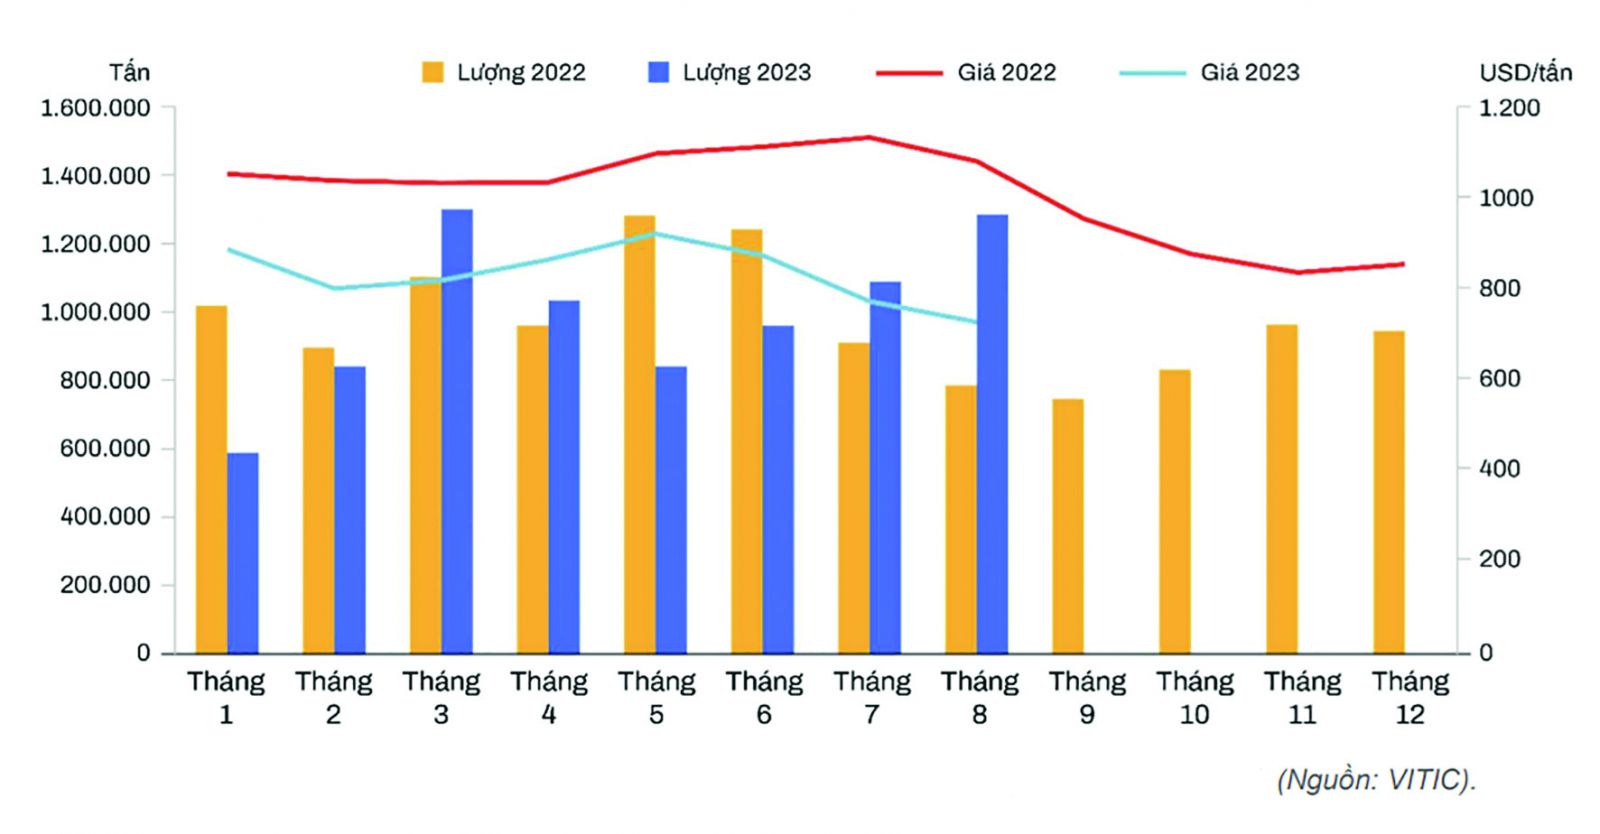  Diễn biến lượng và giá thép nhập khẩu của Việt Nam giai đoạn 2022-2023 (Nguồn: VITIC).